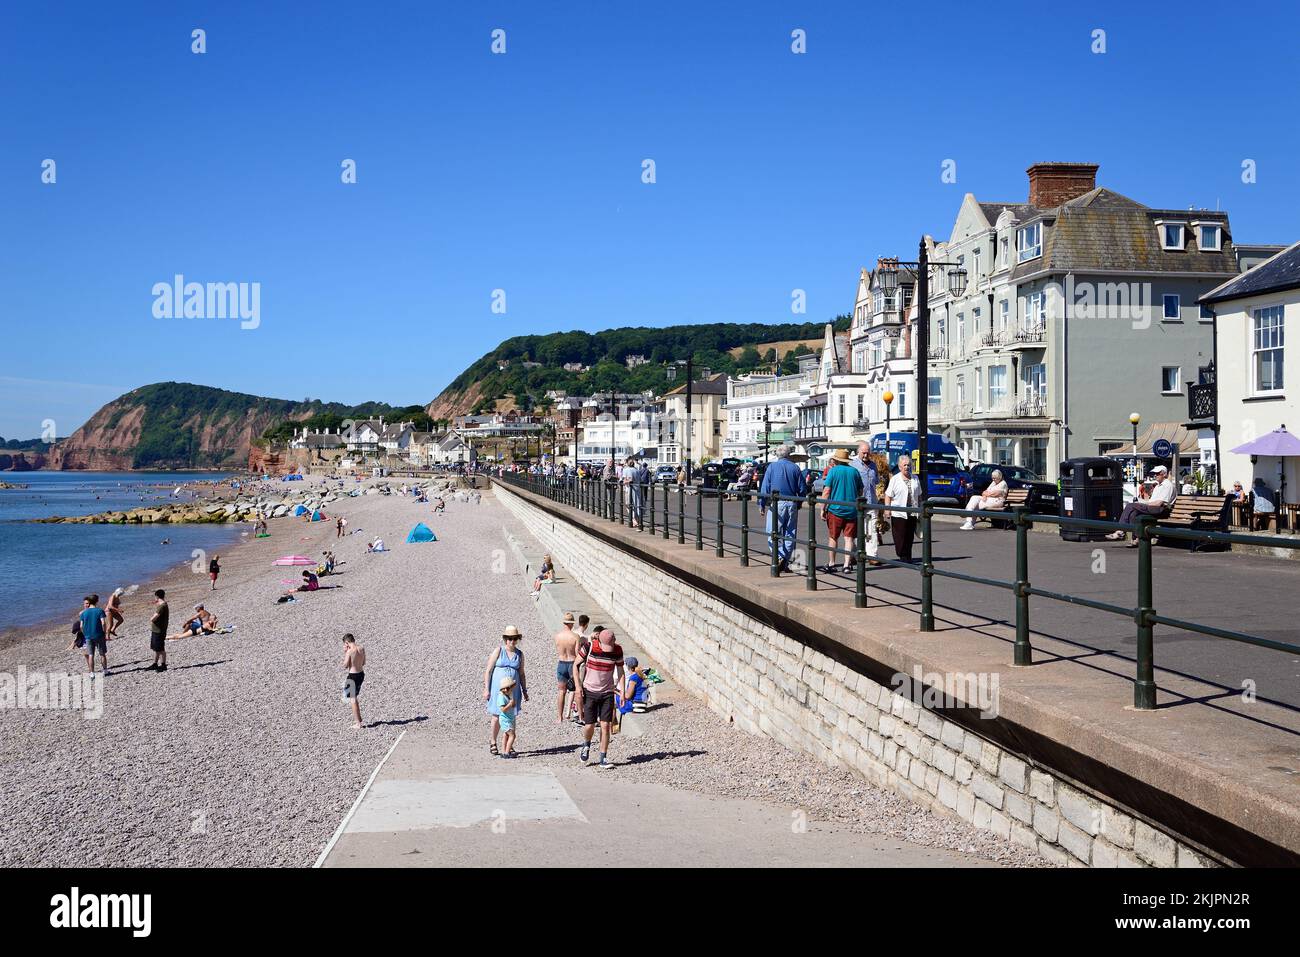 Turisti che si rilassano sulla spiaggia e sul lungomare con hotel che si affacciano sul mare, Sidmouth, Devon, Regno Unito, Europa. Foto Stock